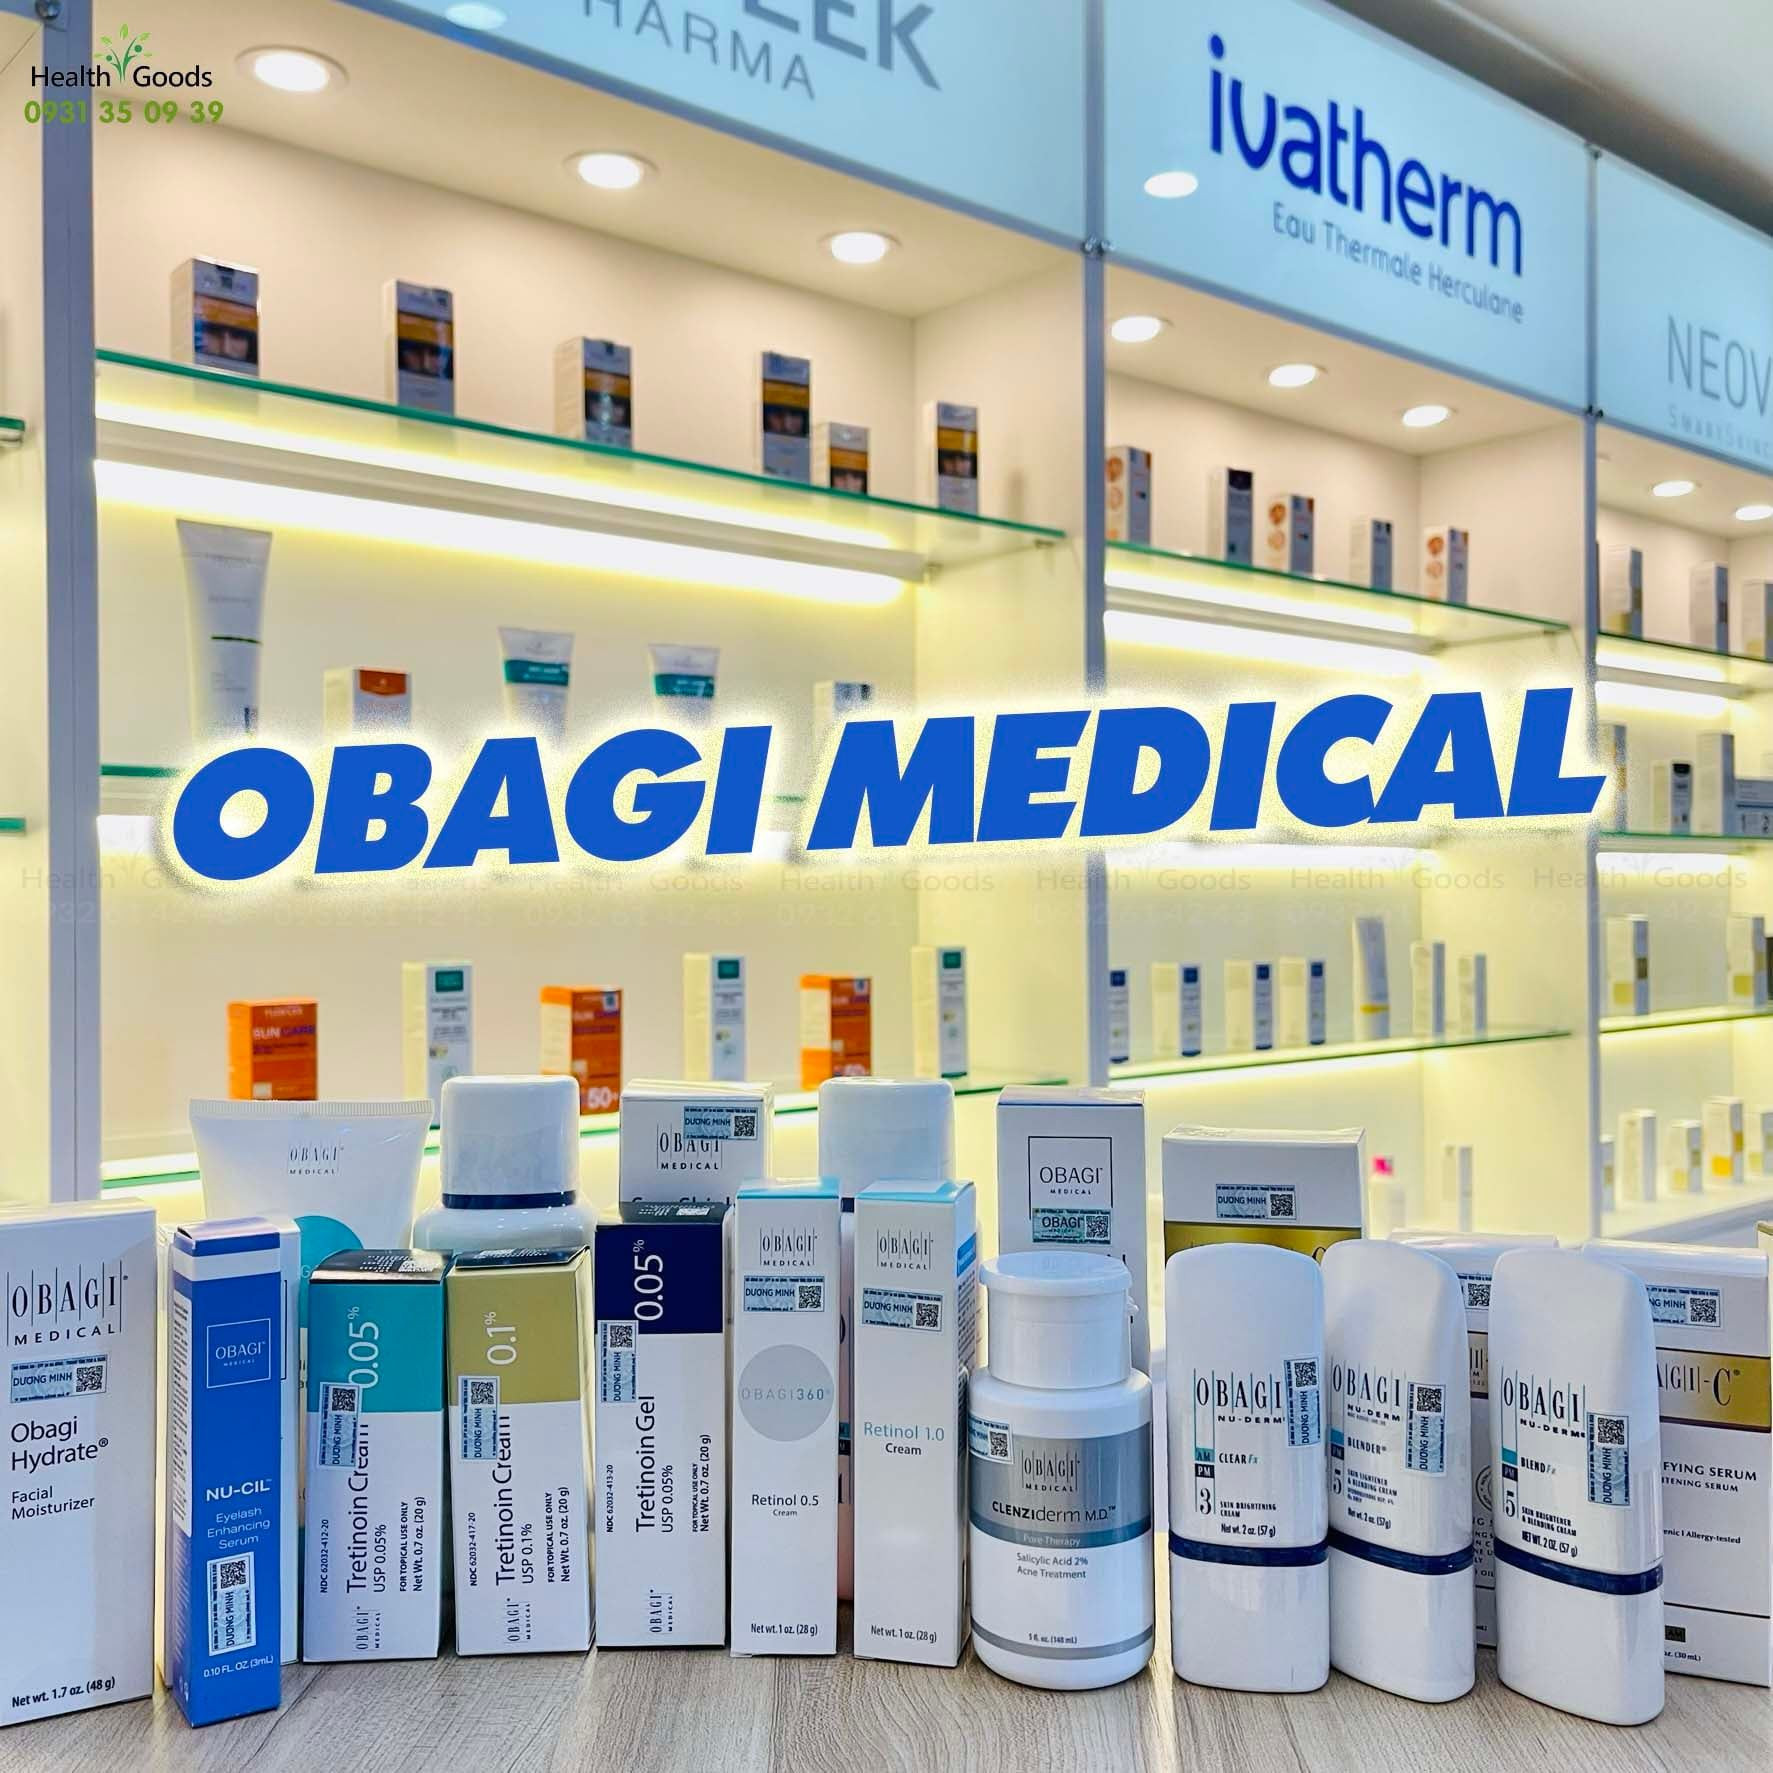 Obagi medical